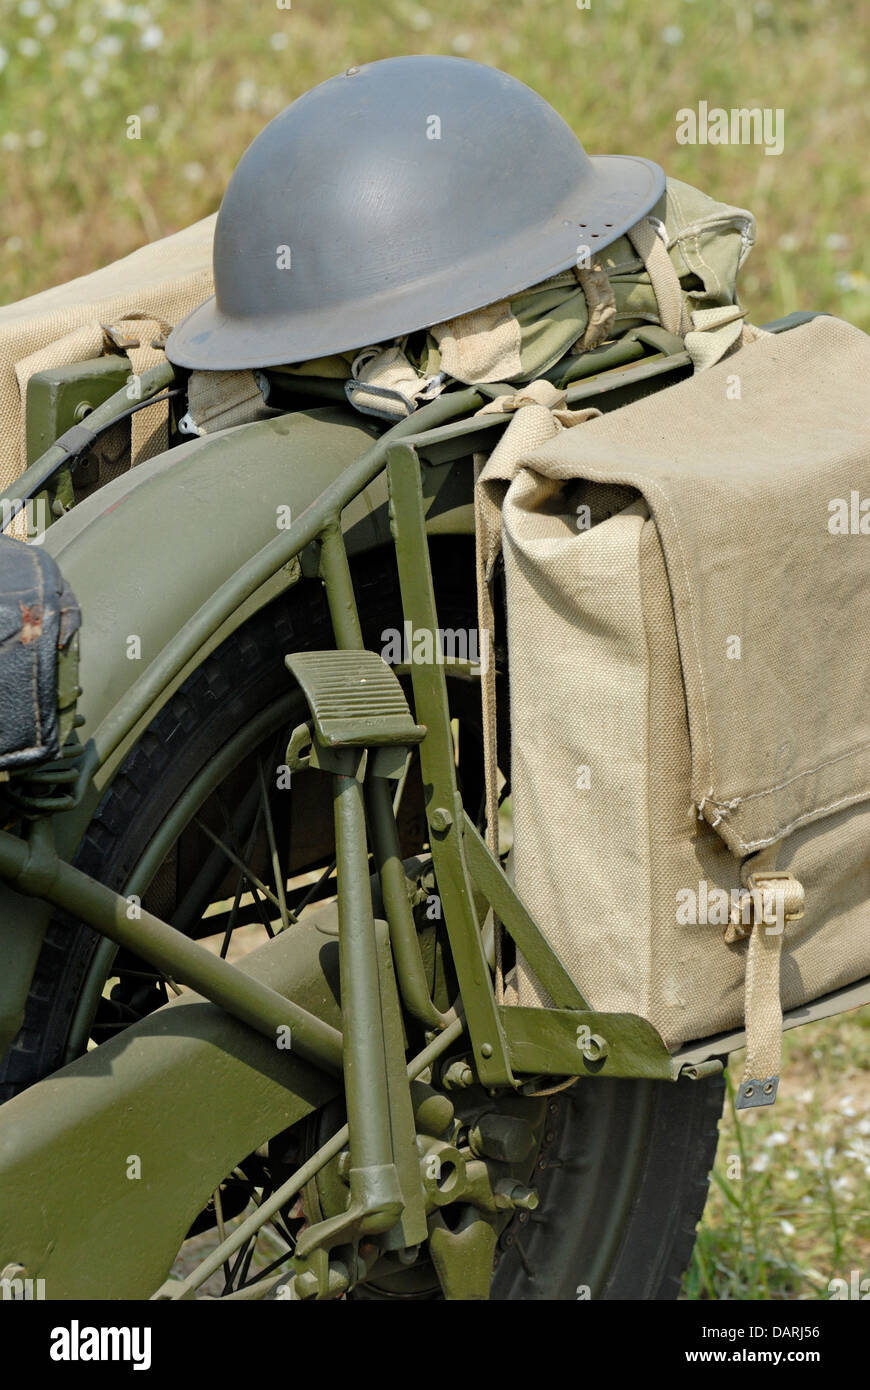 WW2 army casque et sac sur le dos d'une moto militaire Photo Stock - Alamy